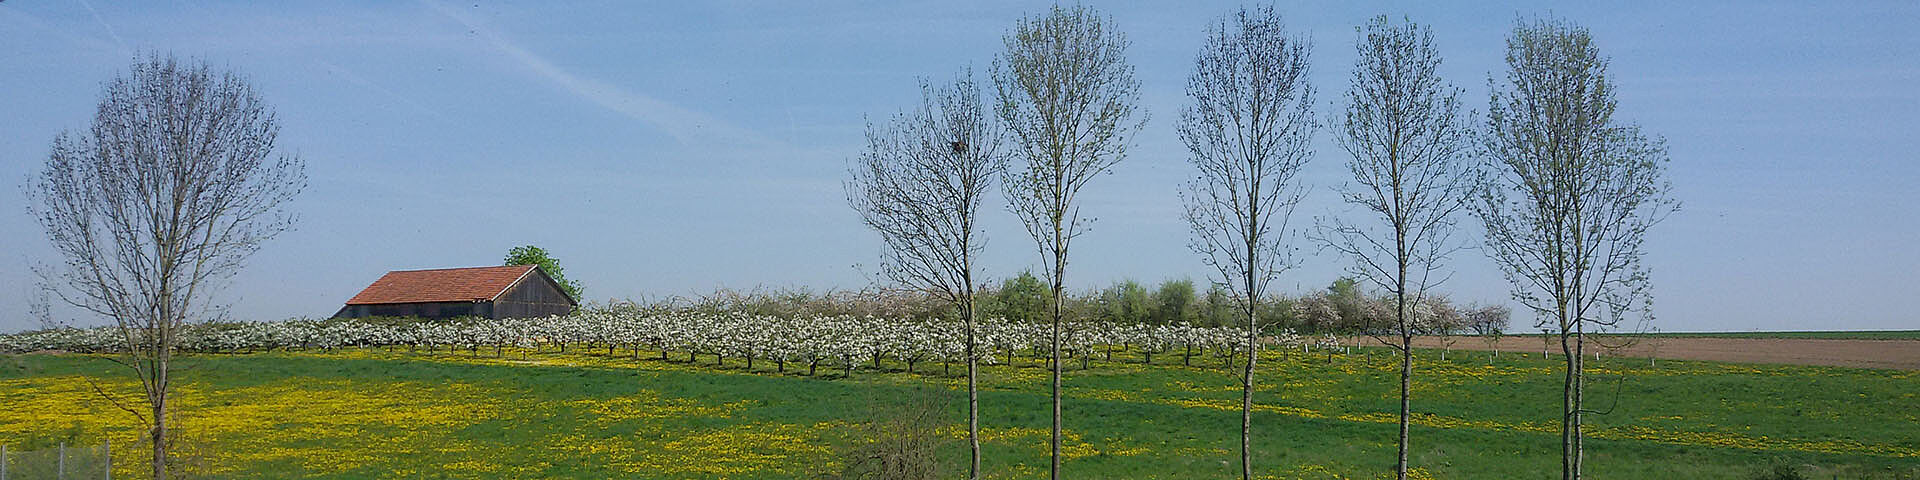 Ein Frühlingsbild mit blühenden Wiesen und Obstbäumen sowie einer Scheune ist zu sehen.